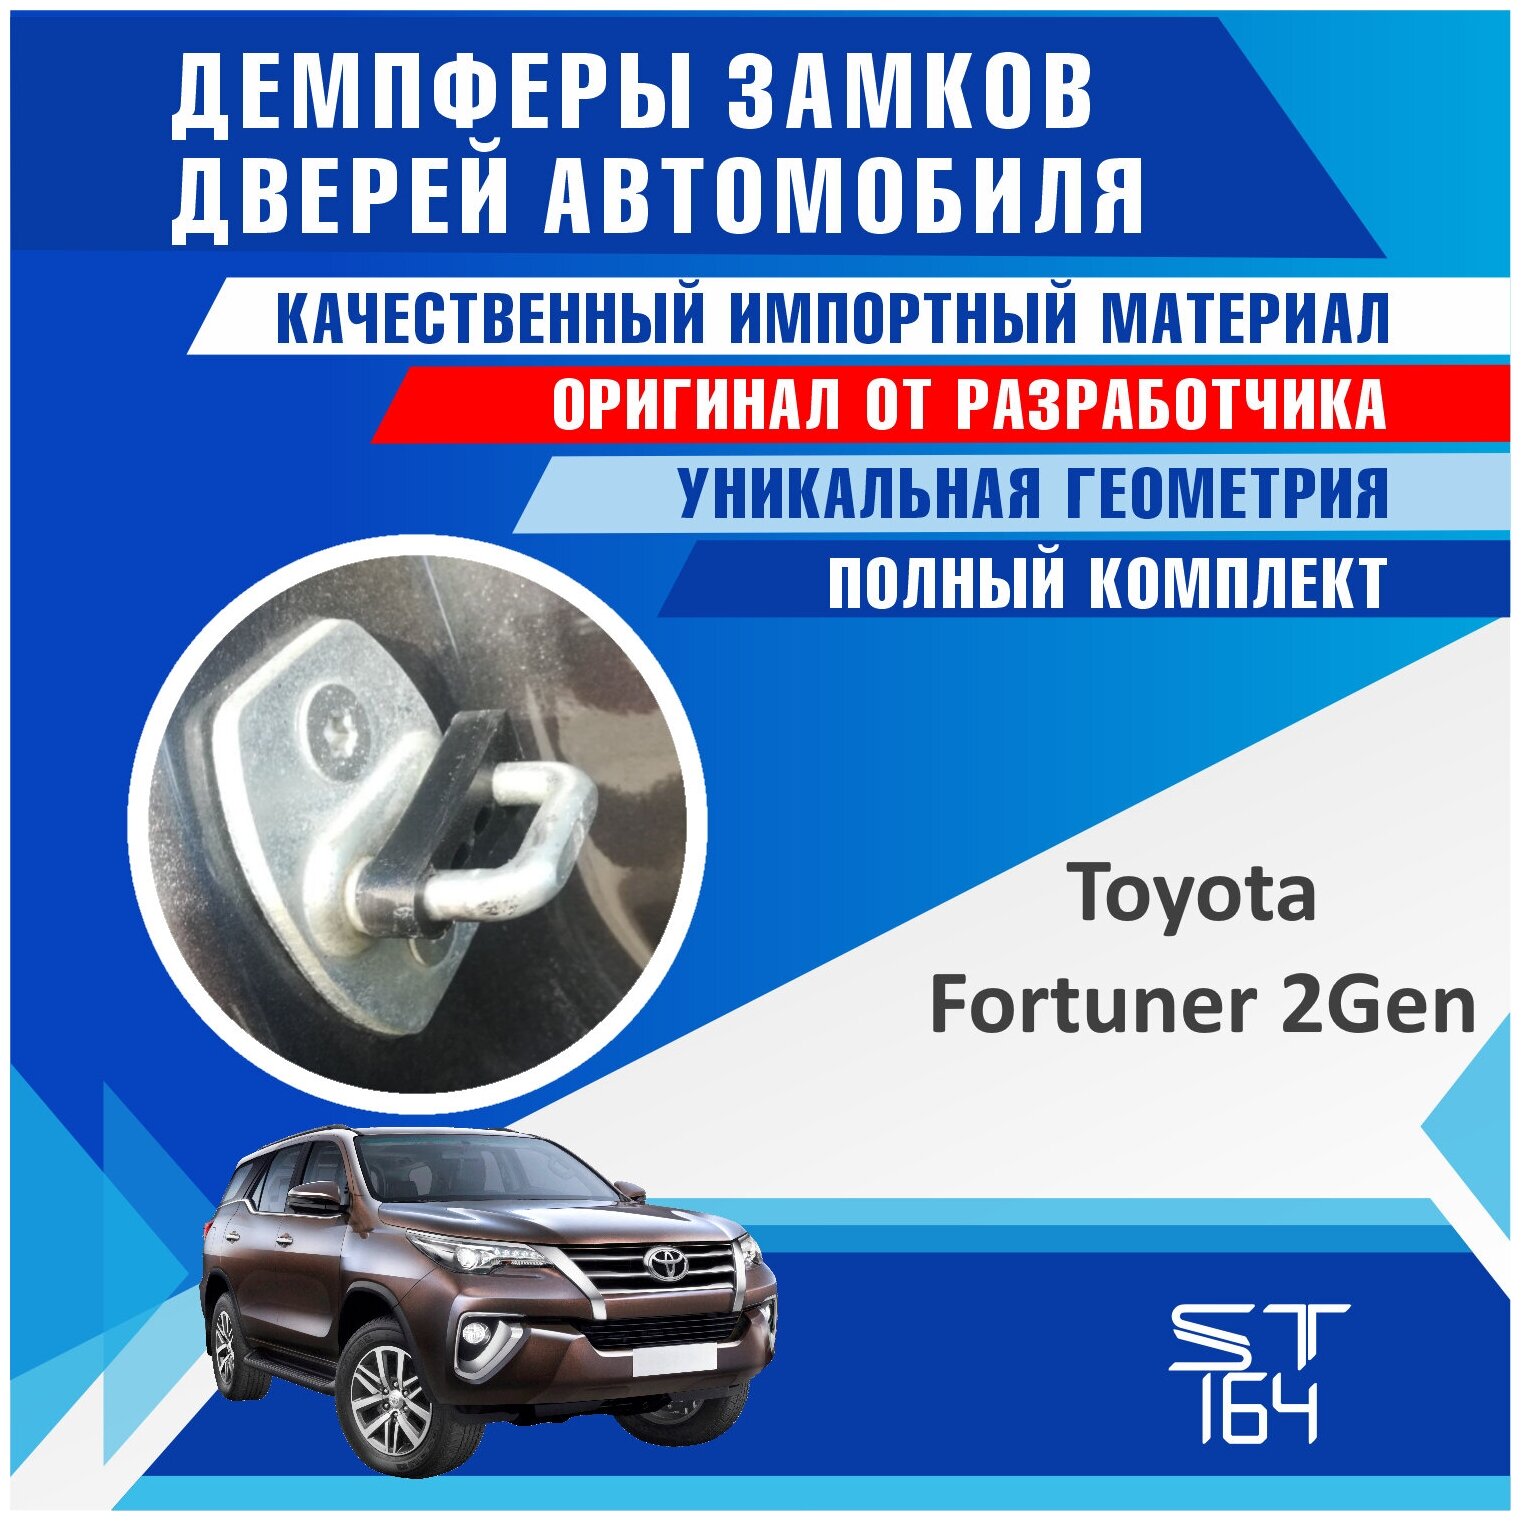 Демпферы замков дверей Тойота Фортунер 2 поколение ( Toyota Fortuner 2 ) на 4 двери + смазка